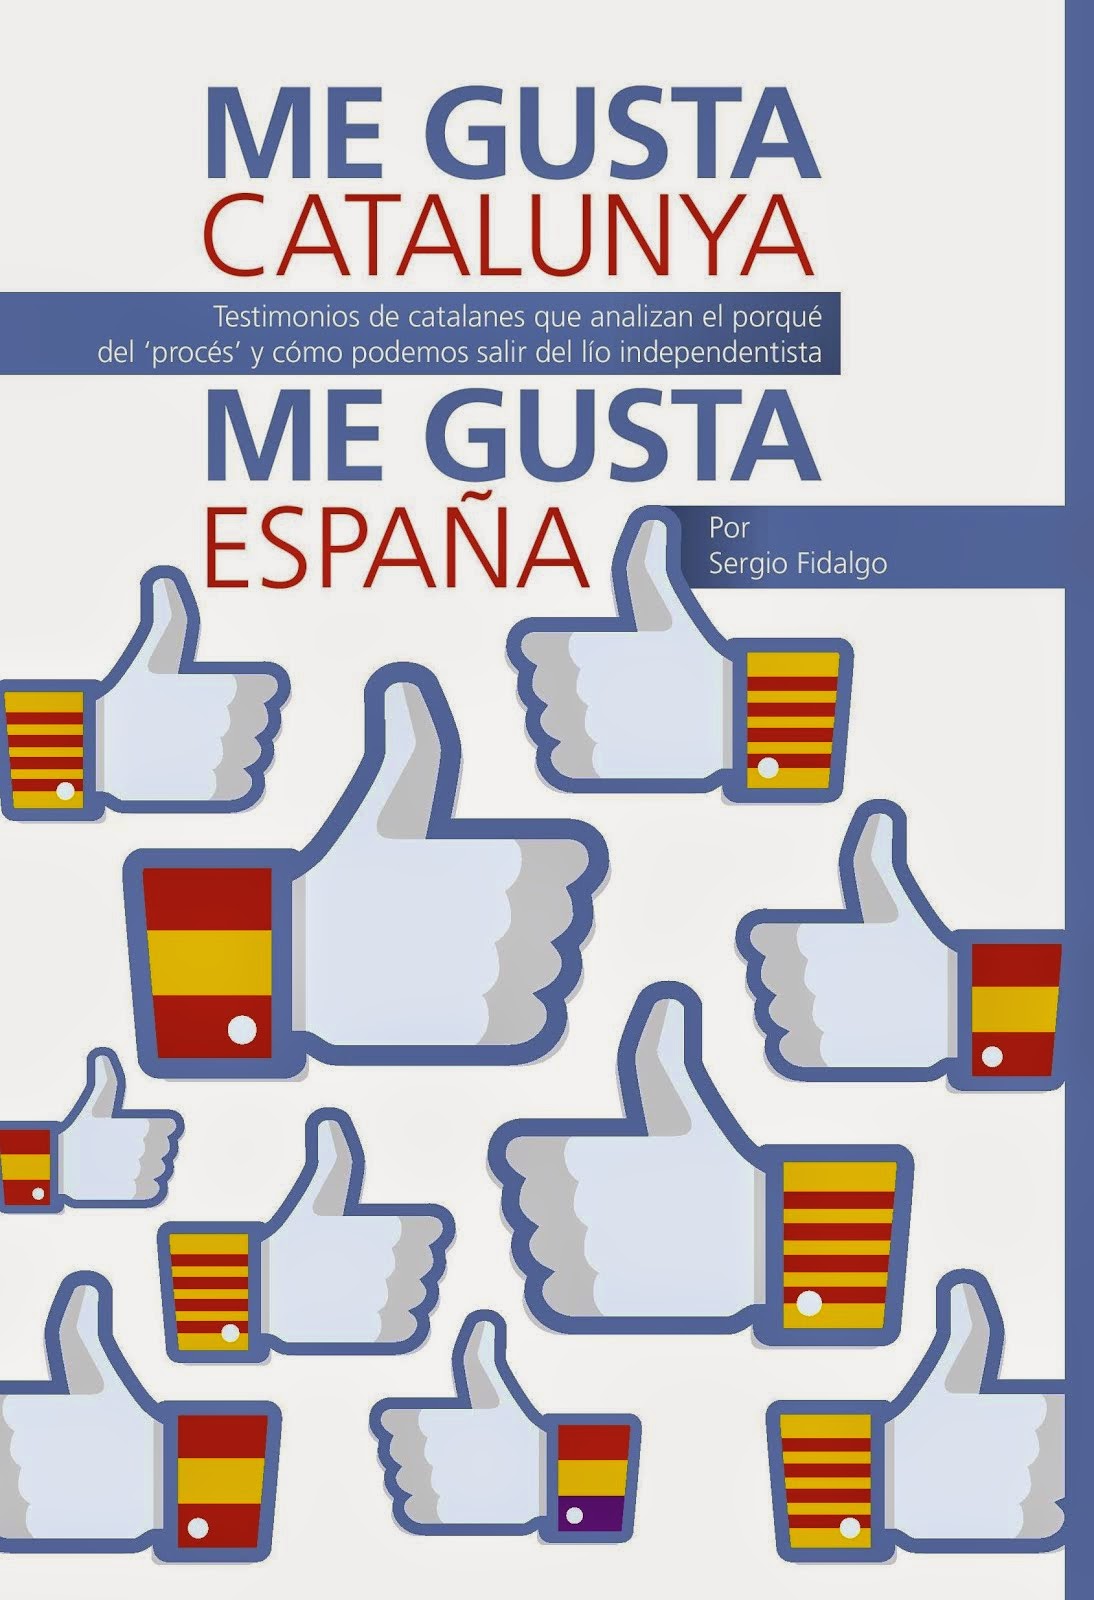 30 catalanes sin complejos